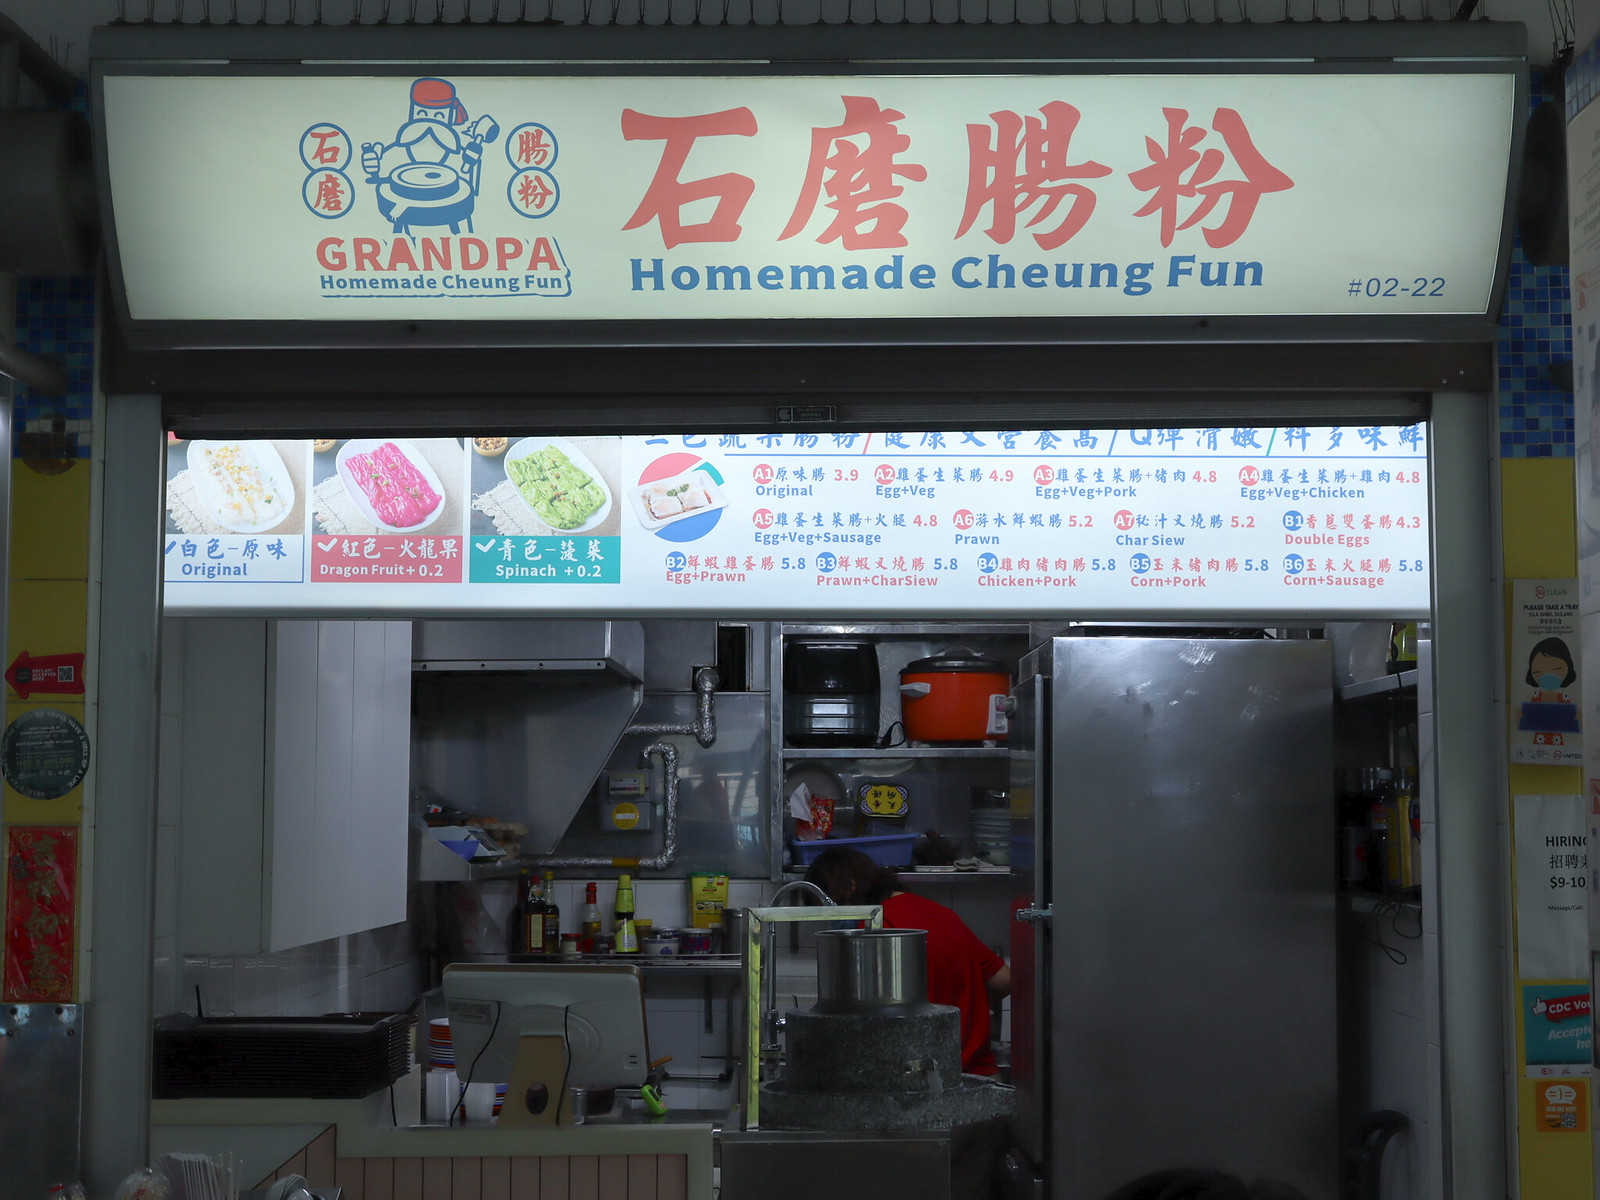 Grandpa Homemade Cheung Fun - storefront